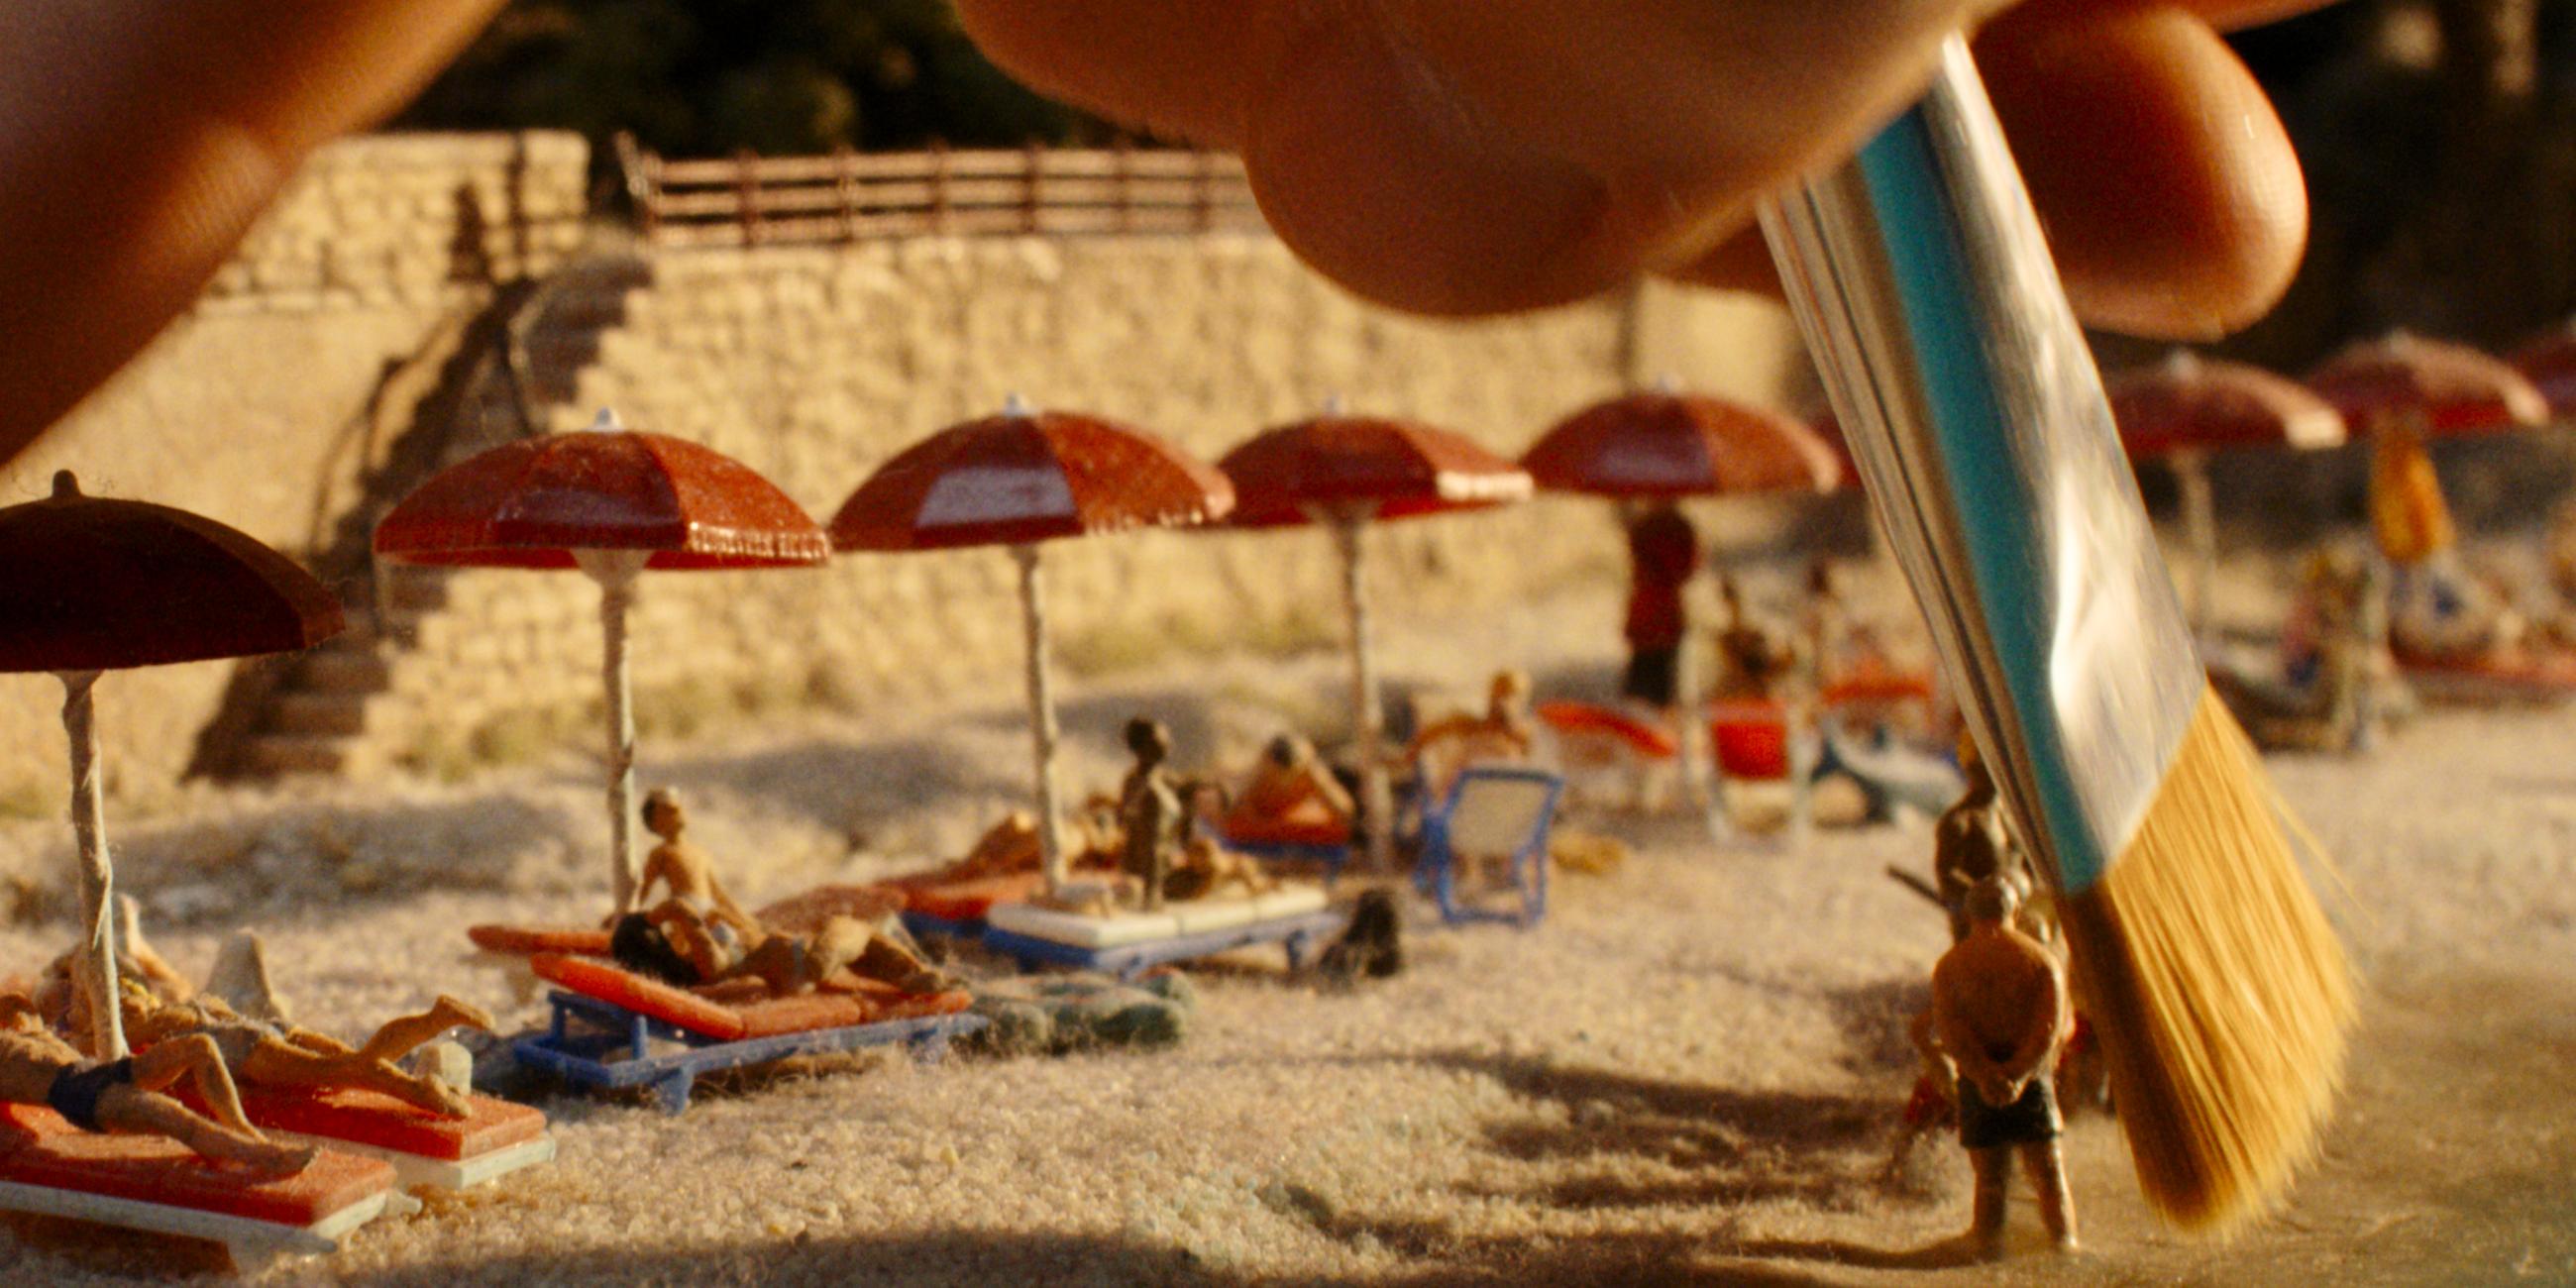 Eine Hand geht mit einem Pinsel über einen Miniaturstrand. An dem Stand liegen kleine Figürchen auf Strandliegen unter Sonnenschirmen.